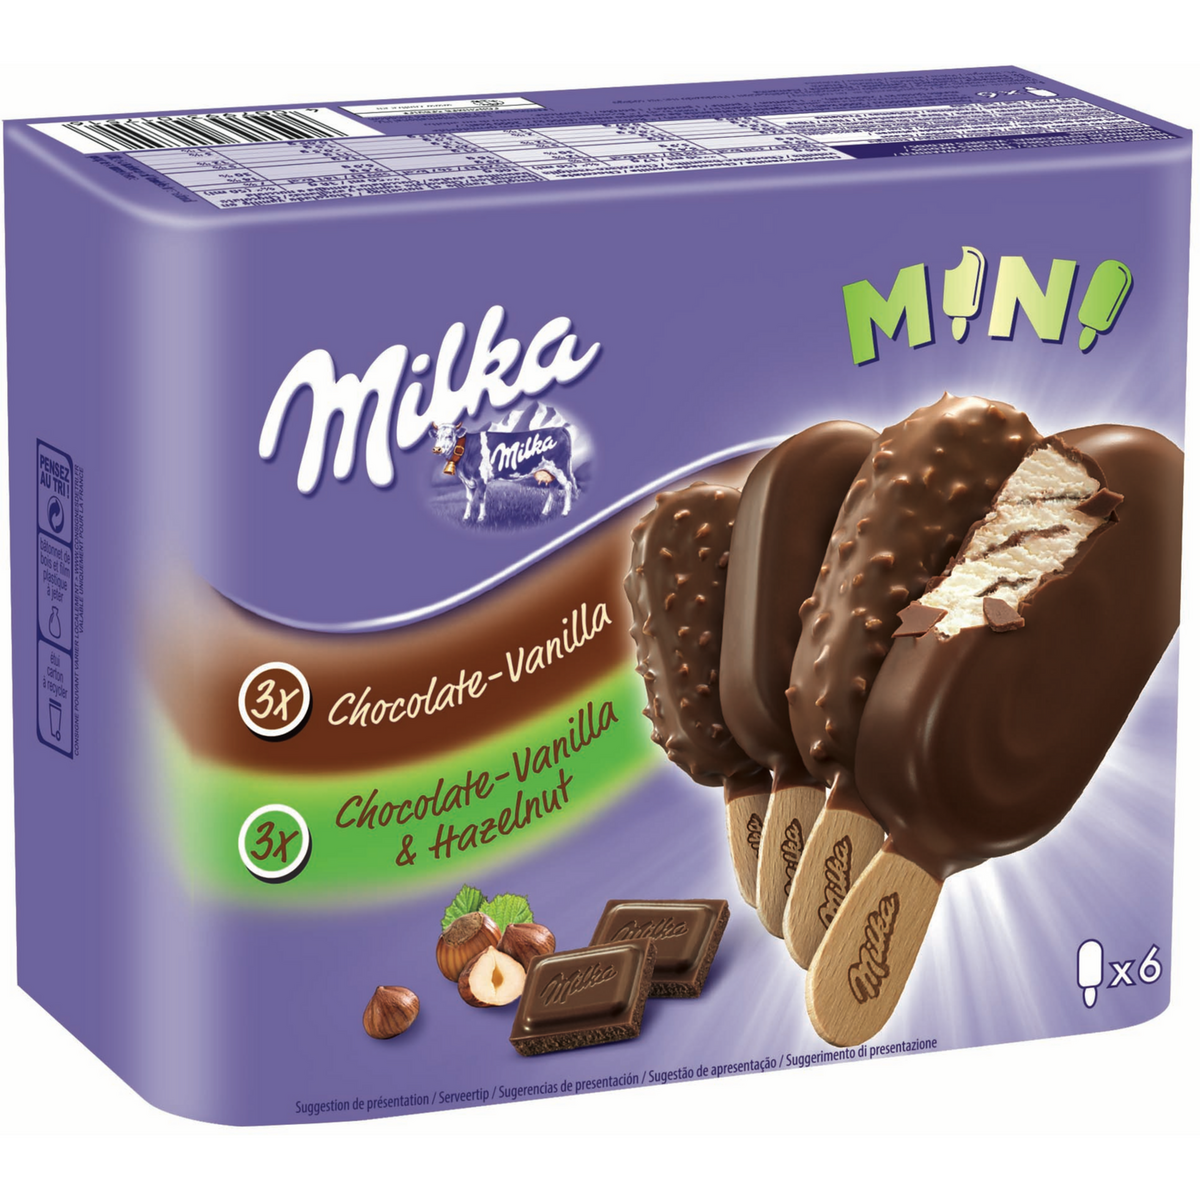 MILKA Milka Mini batônnet chocolat-vanille et chocolat-vanille-noisette 227g 6 minis batônnets 227g